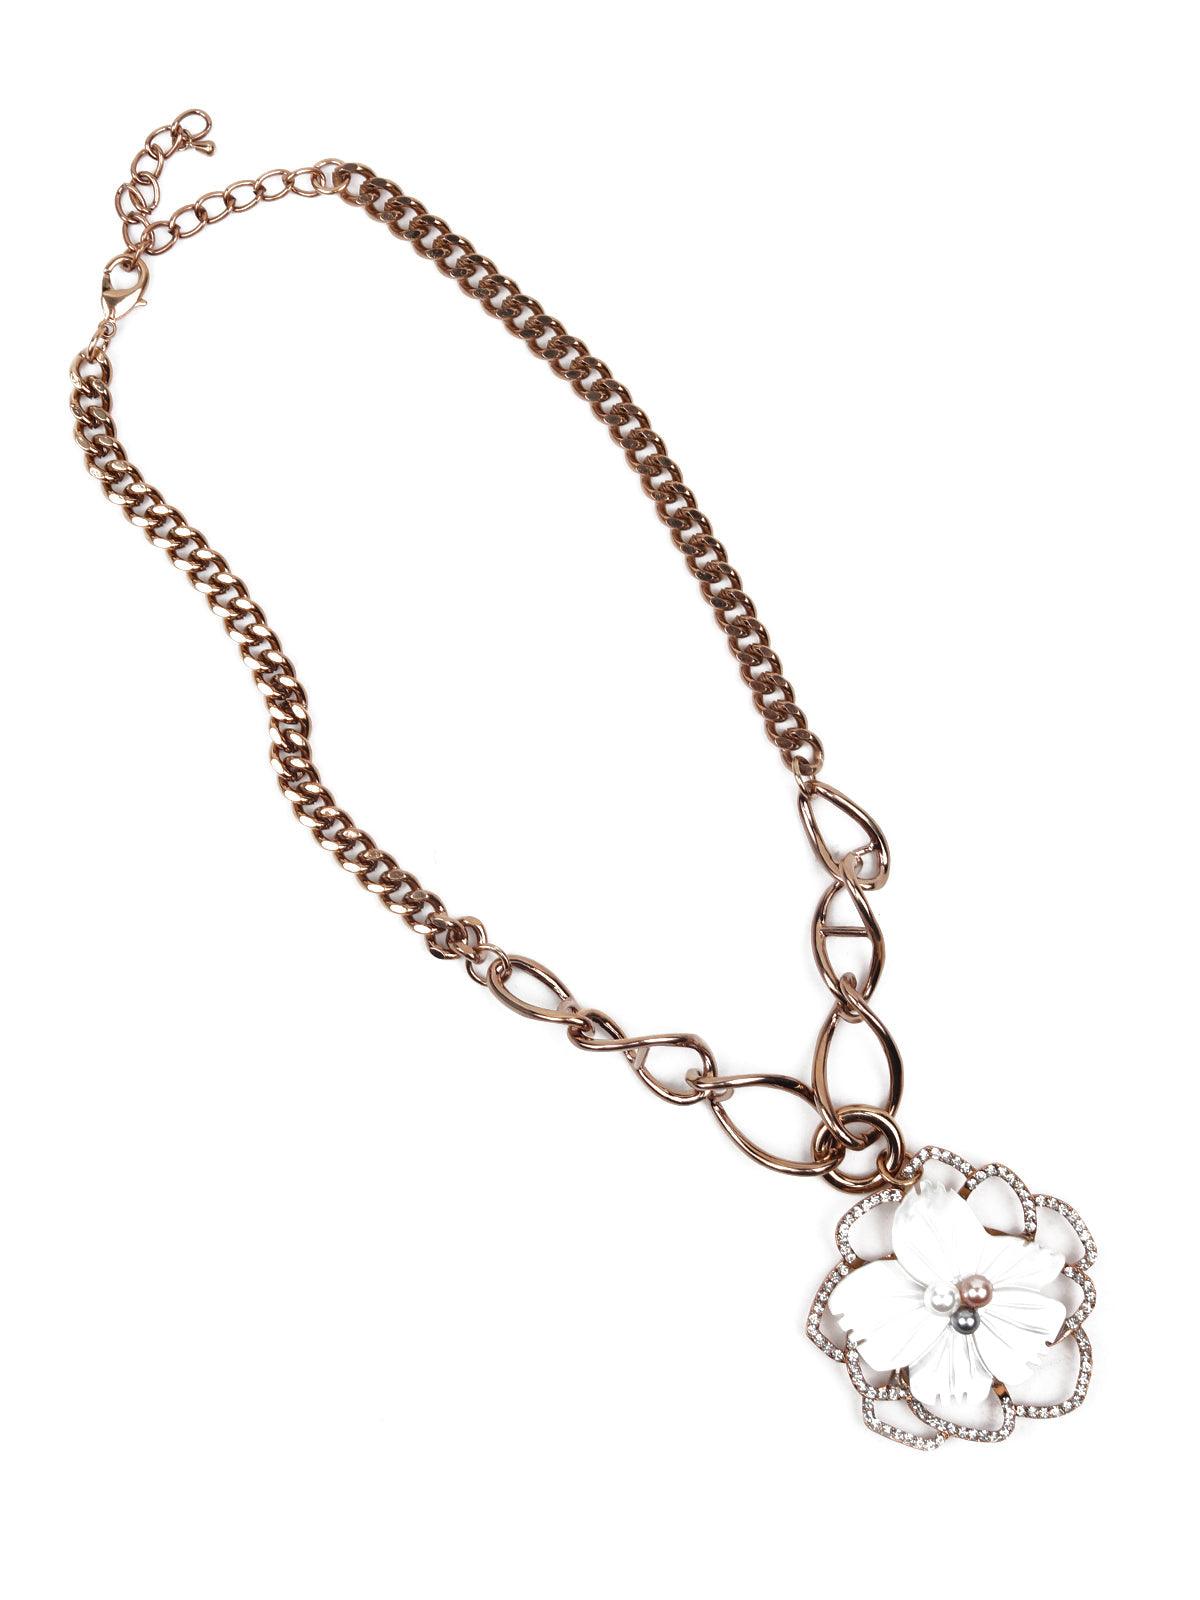 Gorgeous floral pendant gold necklace - Odette